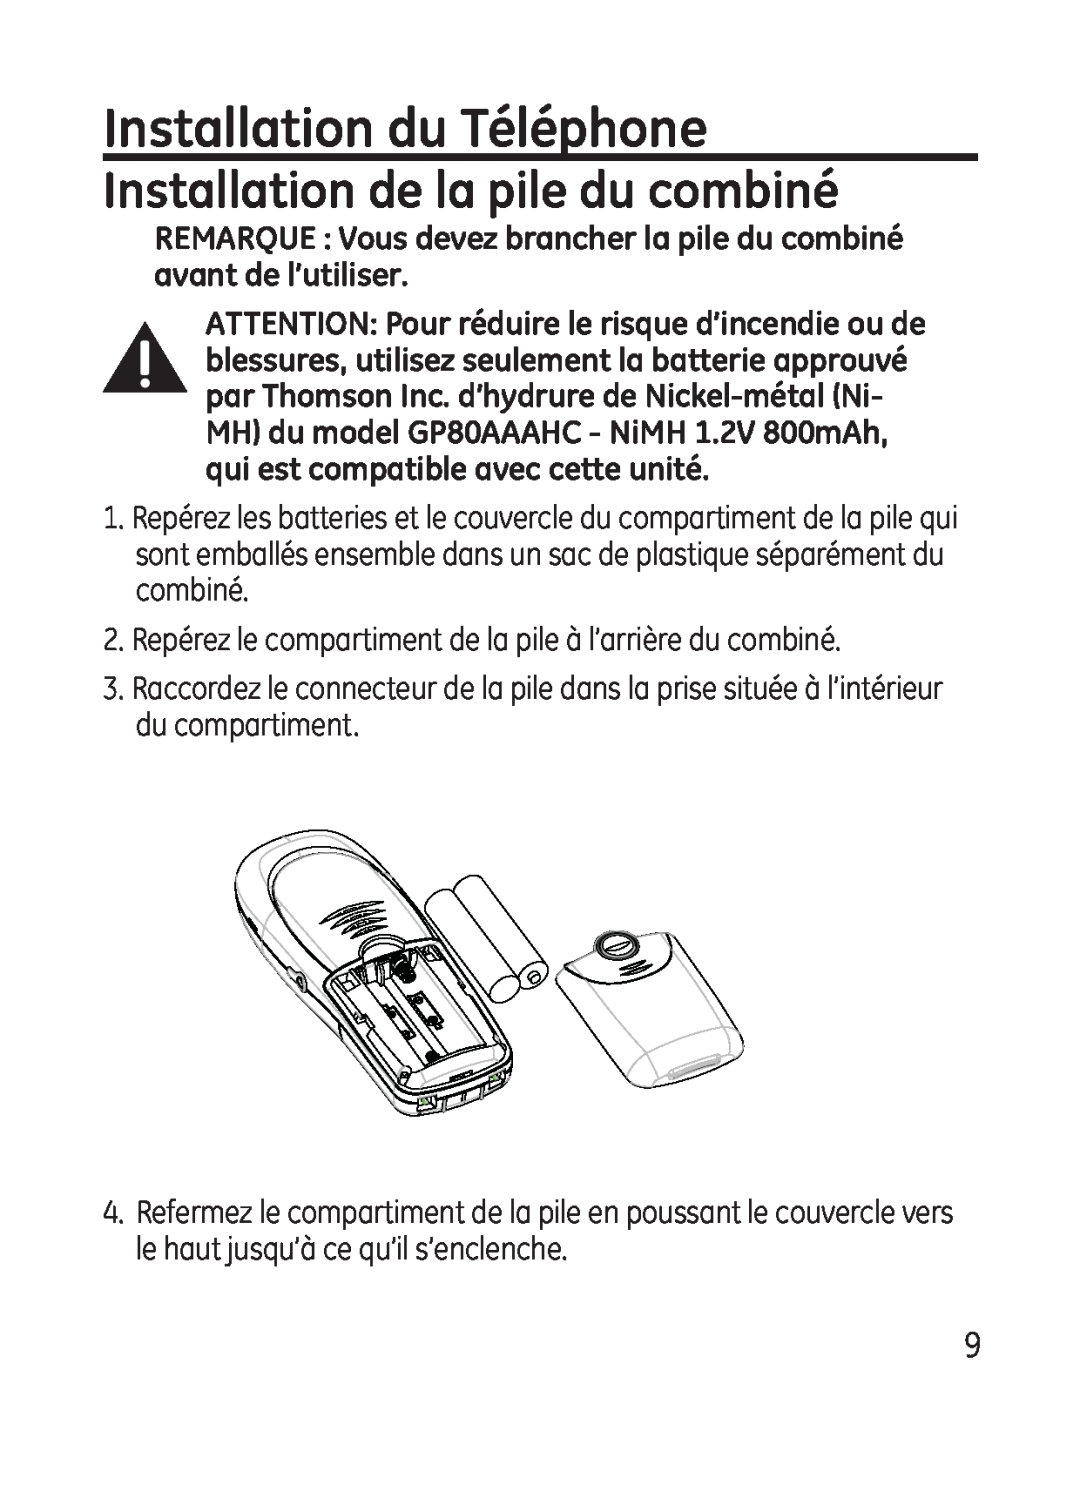 GE 28301 manual Installation du Téléphone, Installation de la pile du combiné 